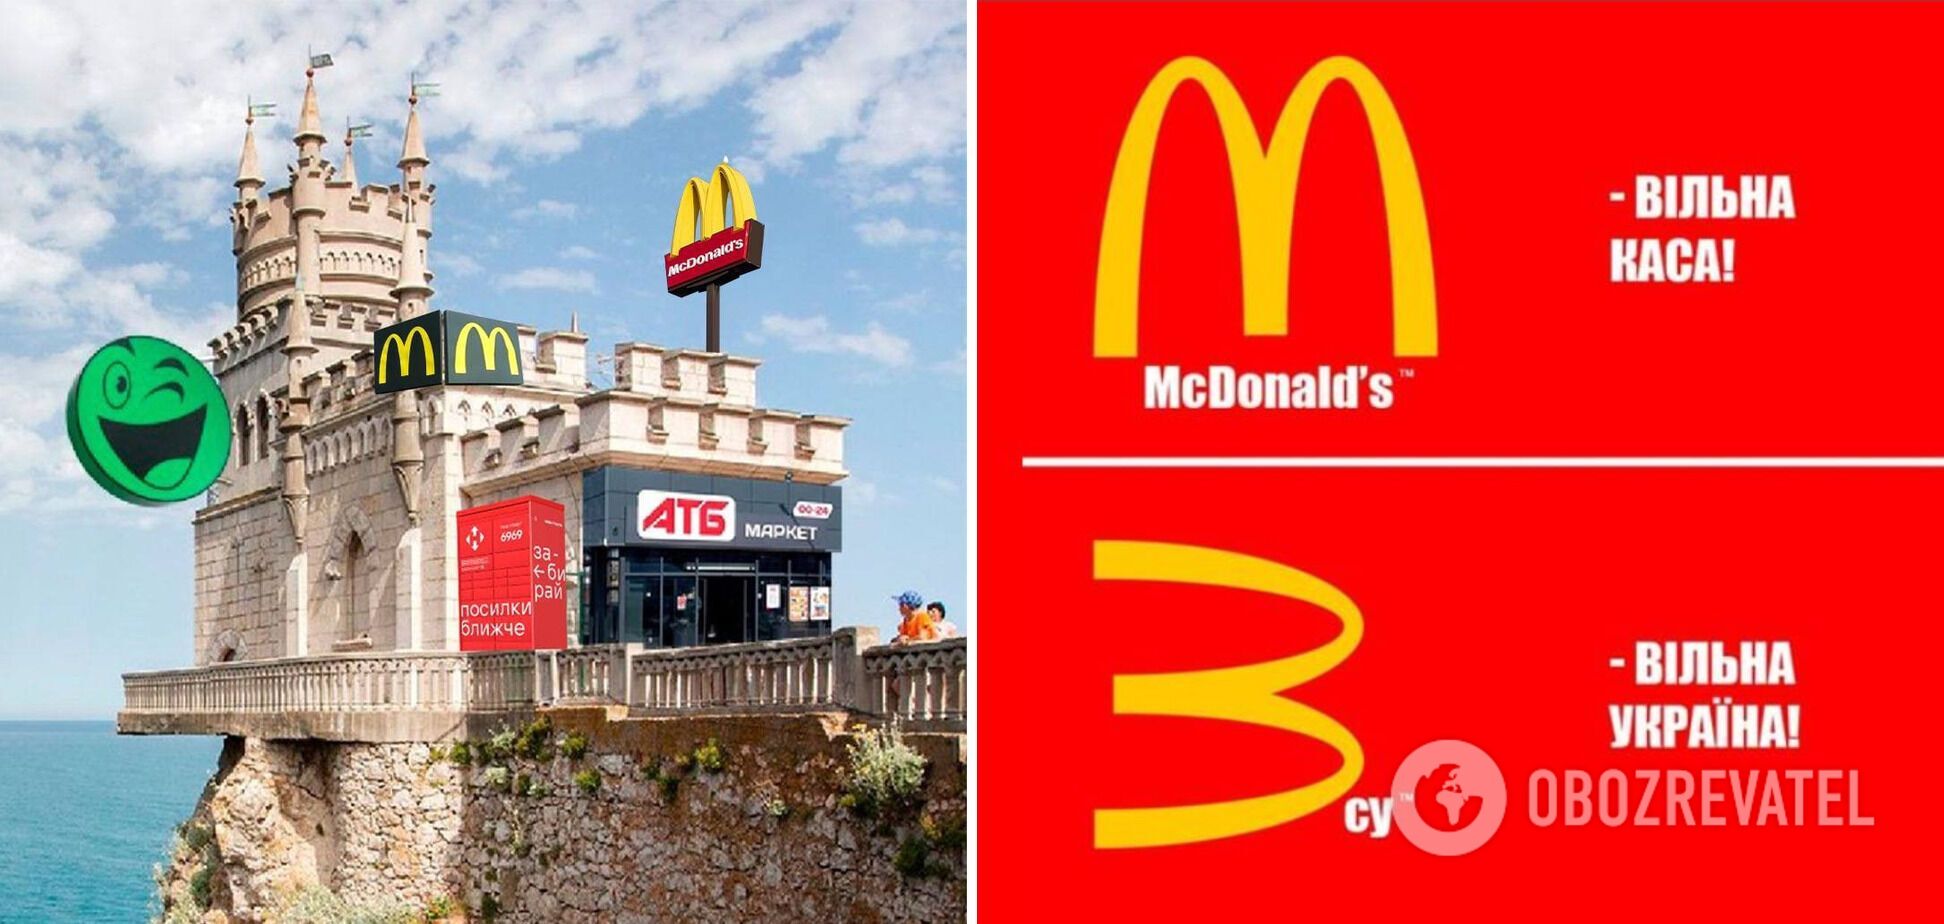 Українці відреагували мемами і жартами на поверненя McDonald's